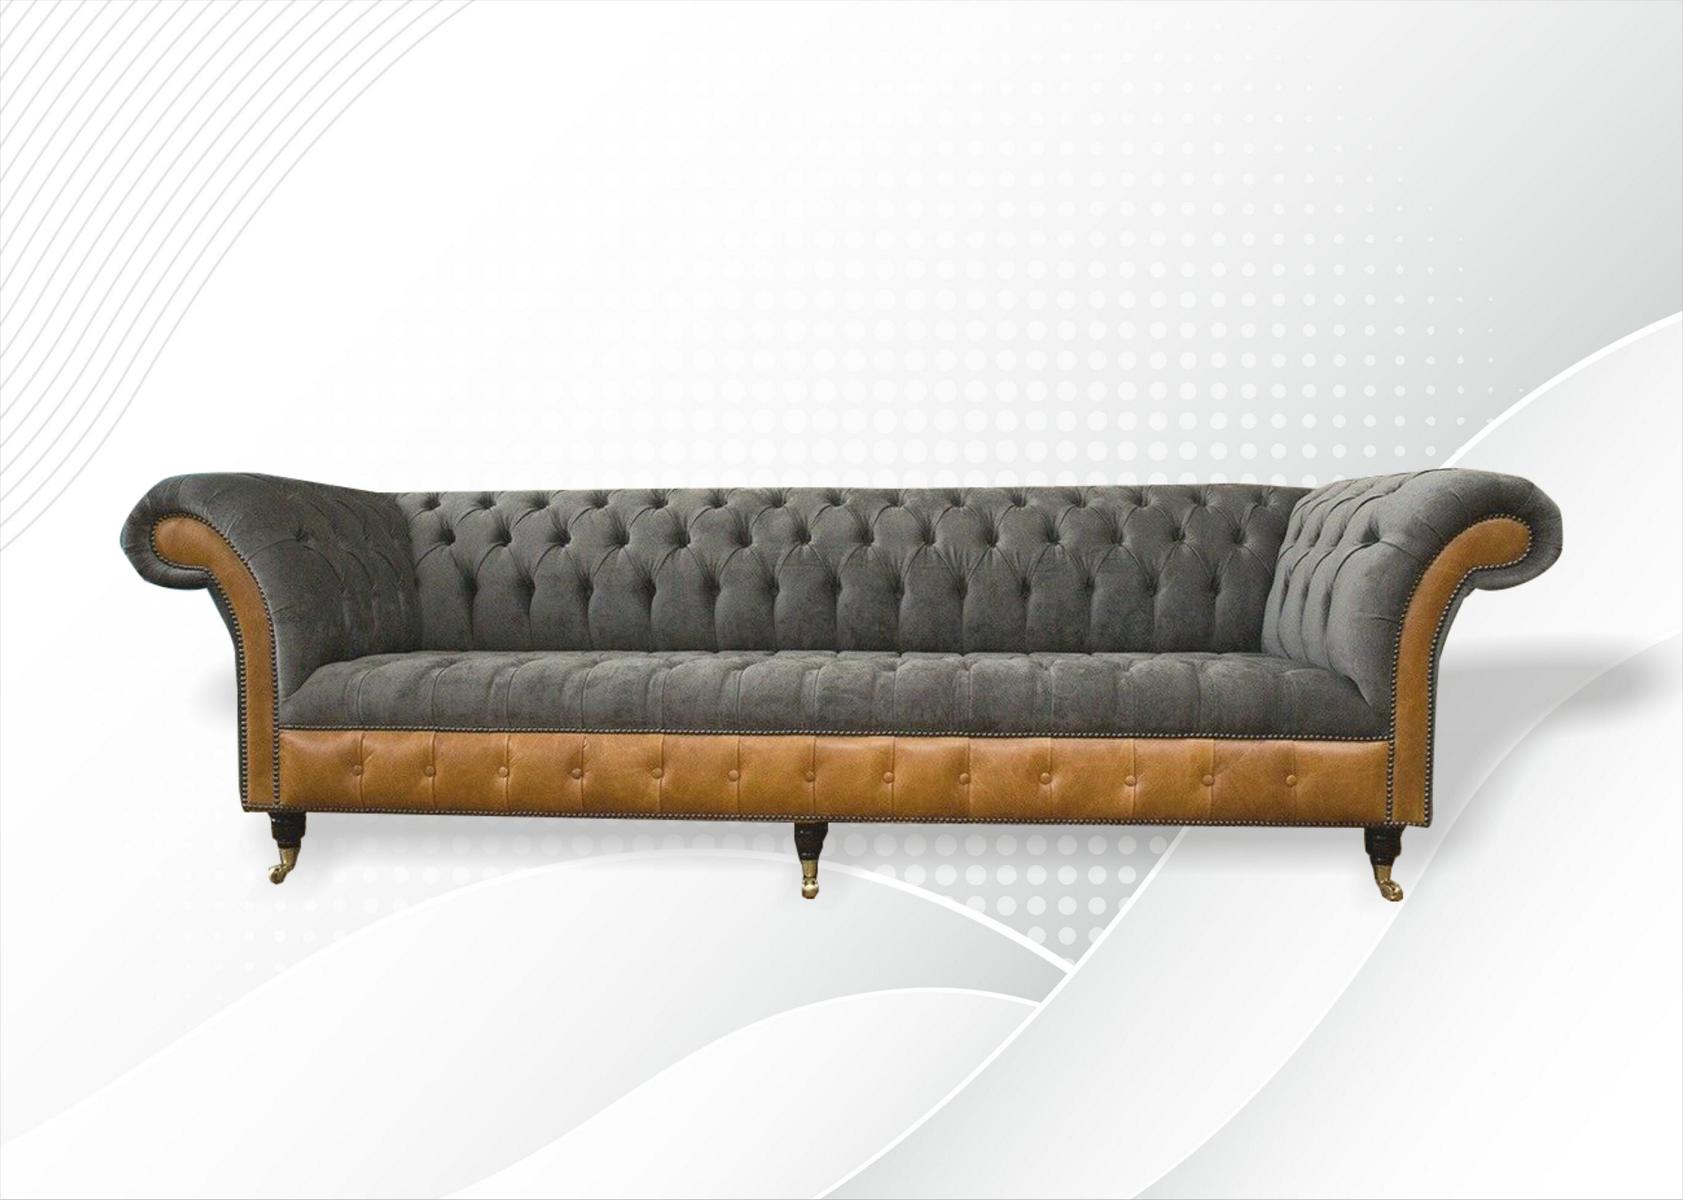 xxl Sofas Chesterfield Polster Design Luxus Sofa 4 Sitzer Leder Couchen